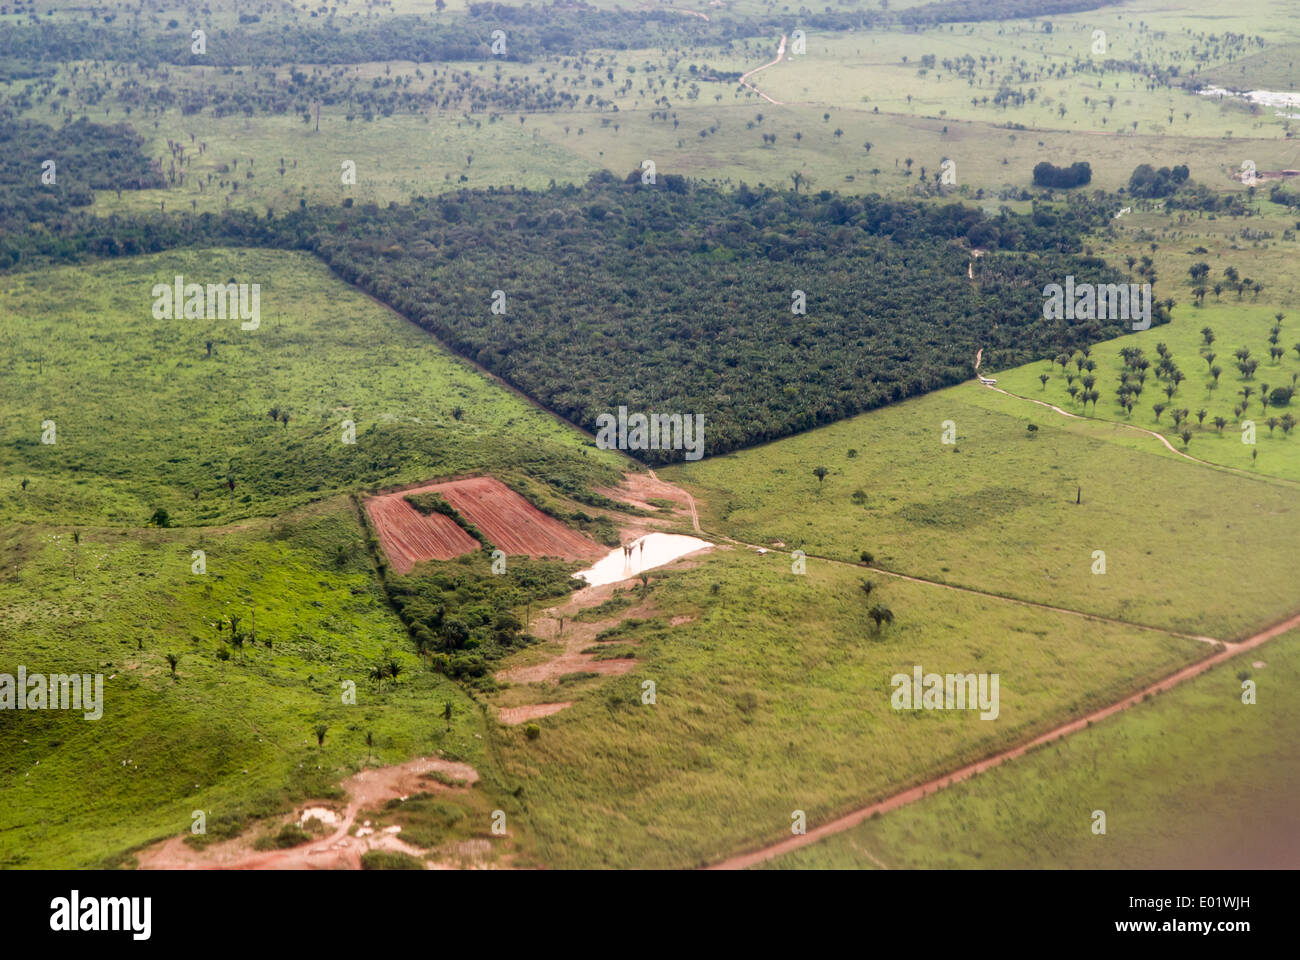 Belem, Maraba, Brasilien. Luftaufnahme eines Patches von Wald umgeben von landwirtschaftlichen Flächen entwaldet Rinder weiden. Stockfoto